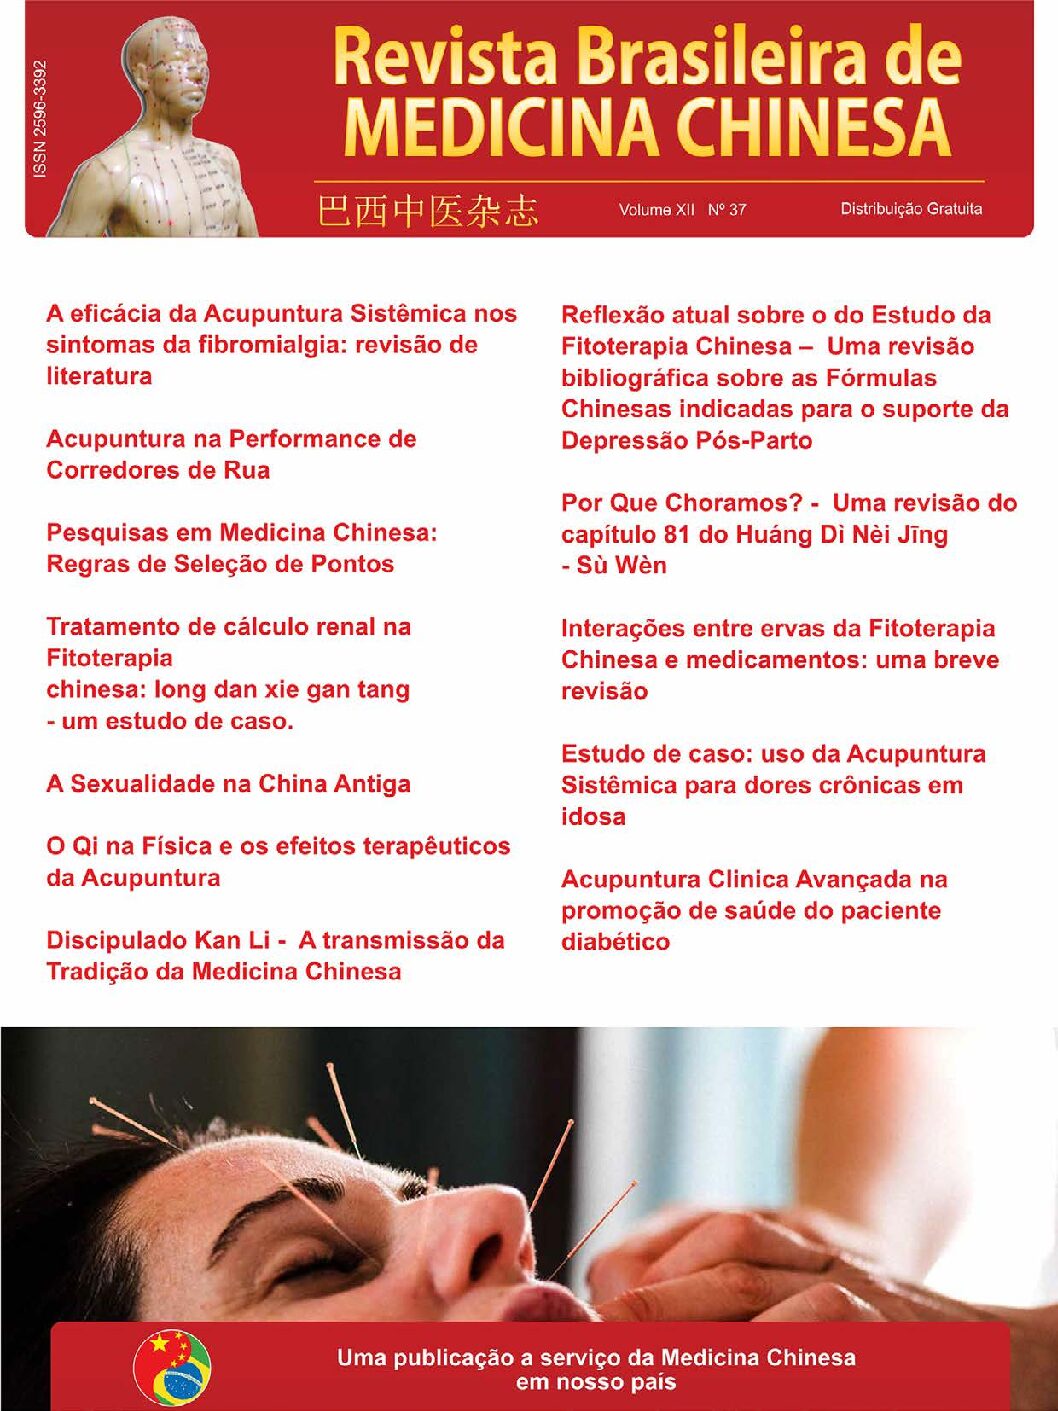 Revista Brasileira de Medicina Chinesa – 37ª Edição